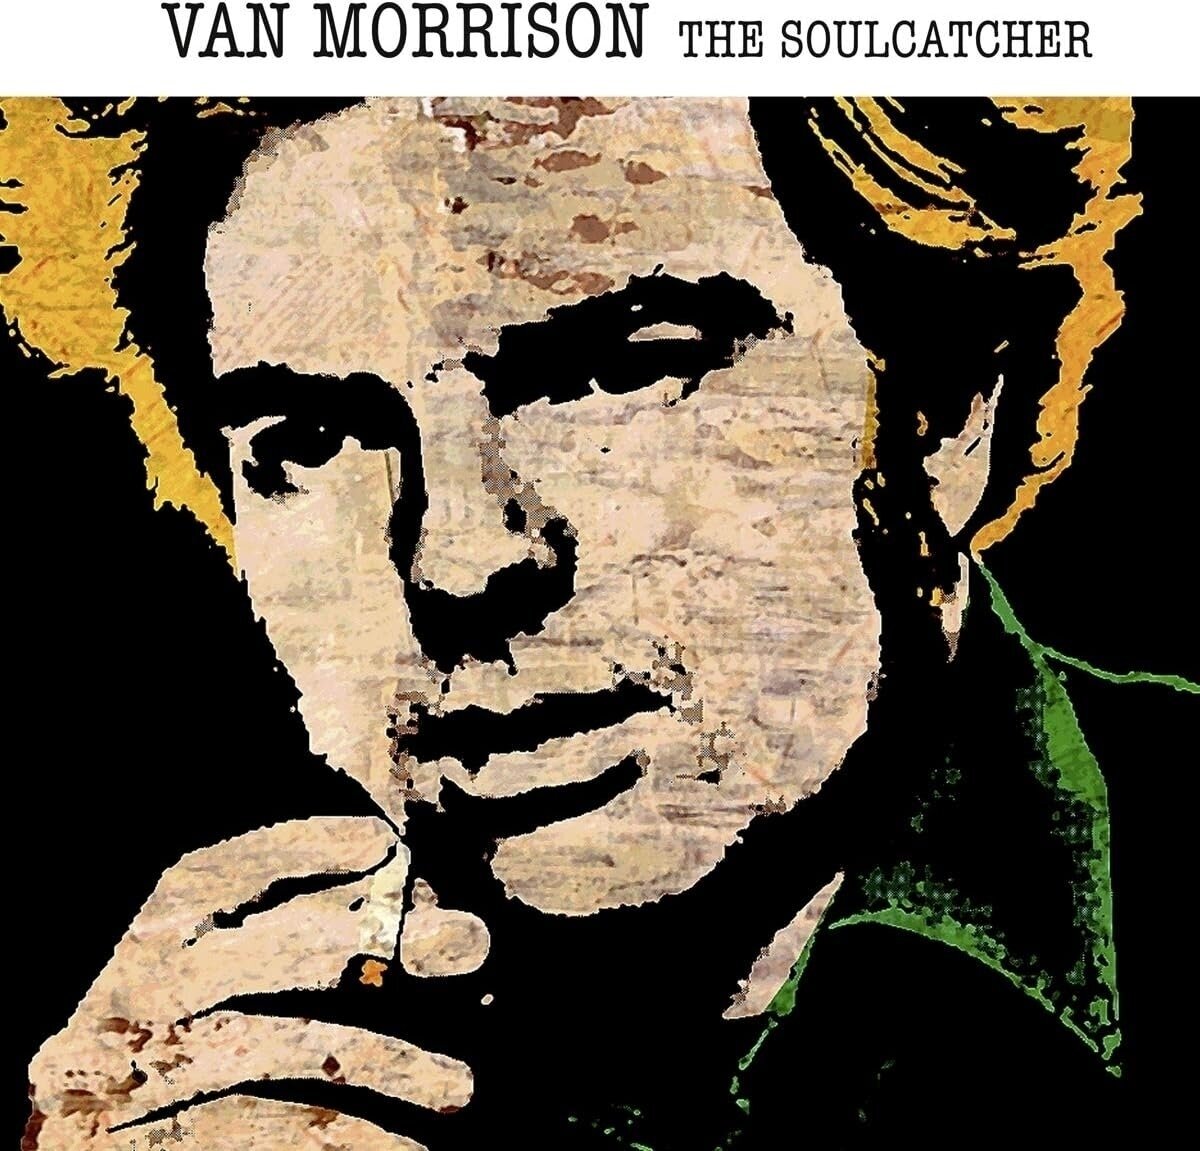 Vinyl Record Van Morrison - The Soulcatcher (Limited Edition) (Orange Coloured) (LP)